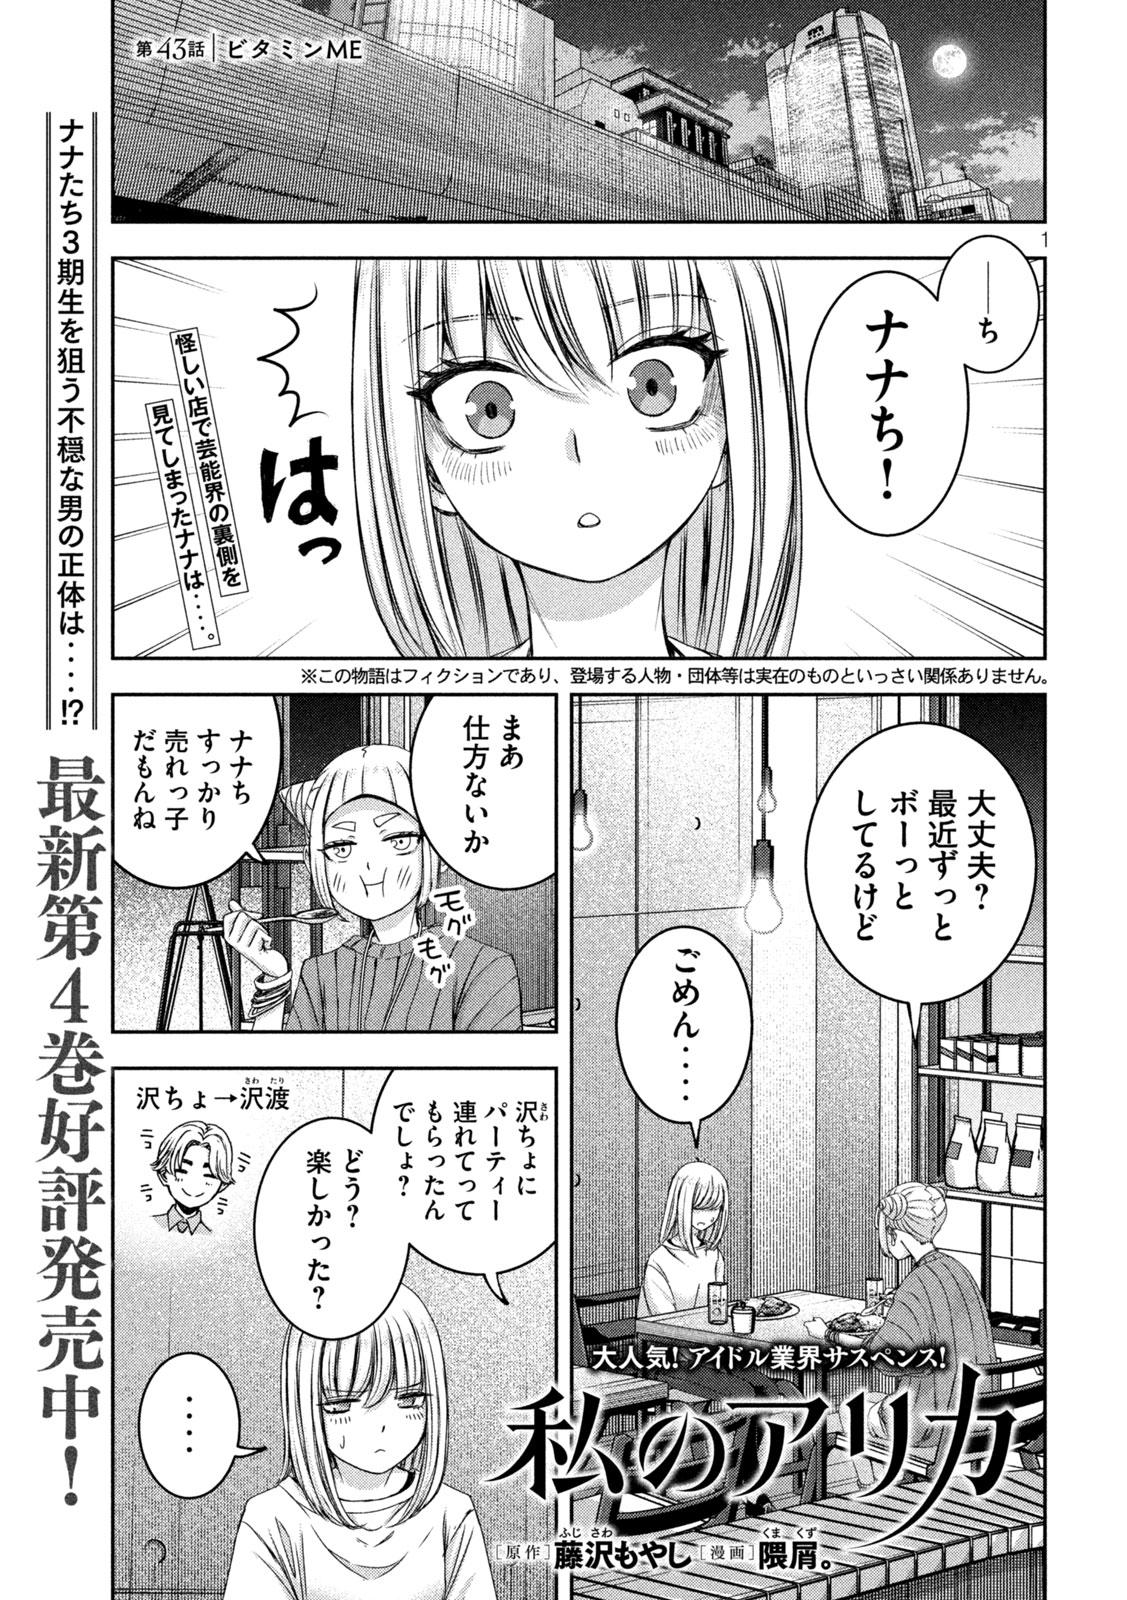 Watashi no Arika - Chapter 43 - Page 1